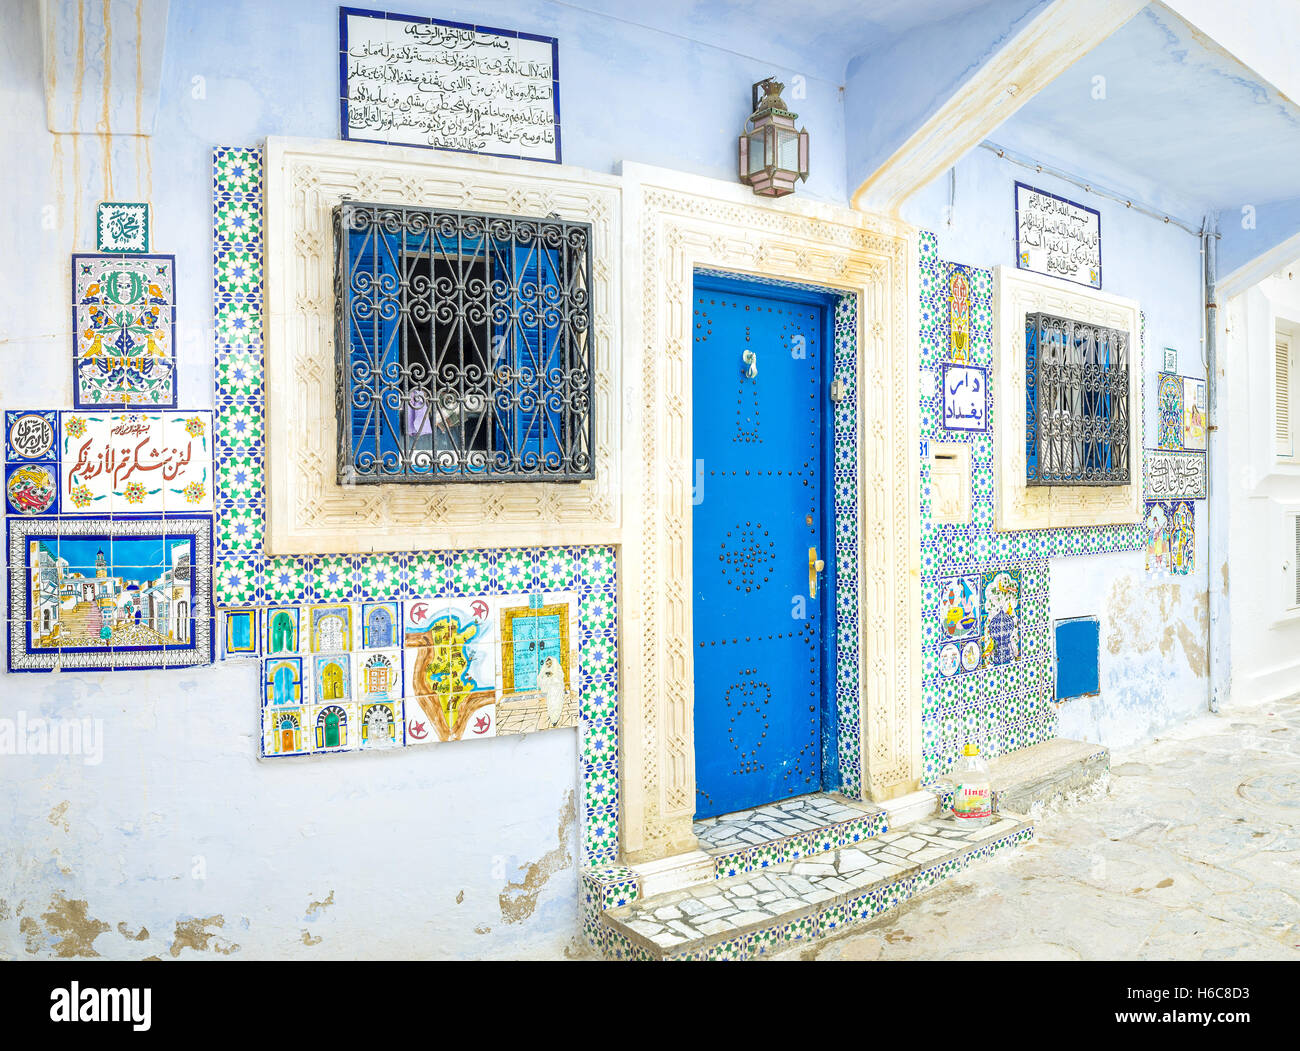 La parete di facciata della galleria d'arte decorato con immagini e testi in arabo realizzati su piastrelle smaltate Foto Stock